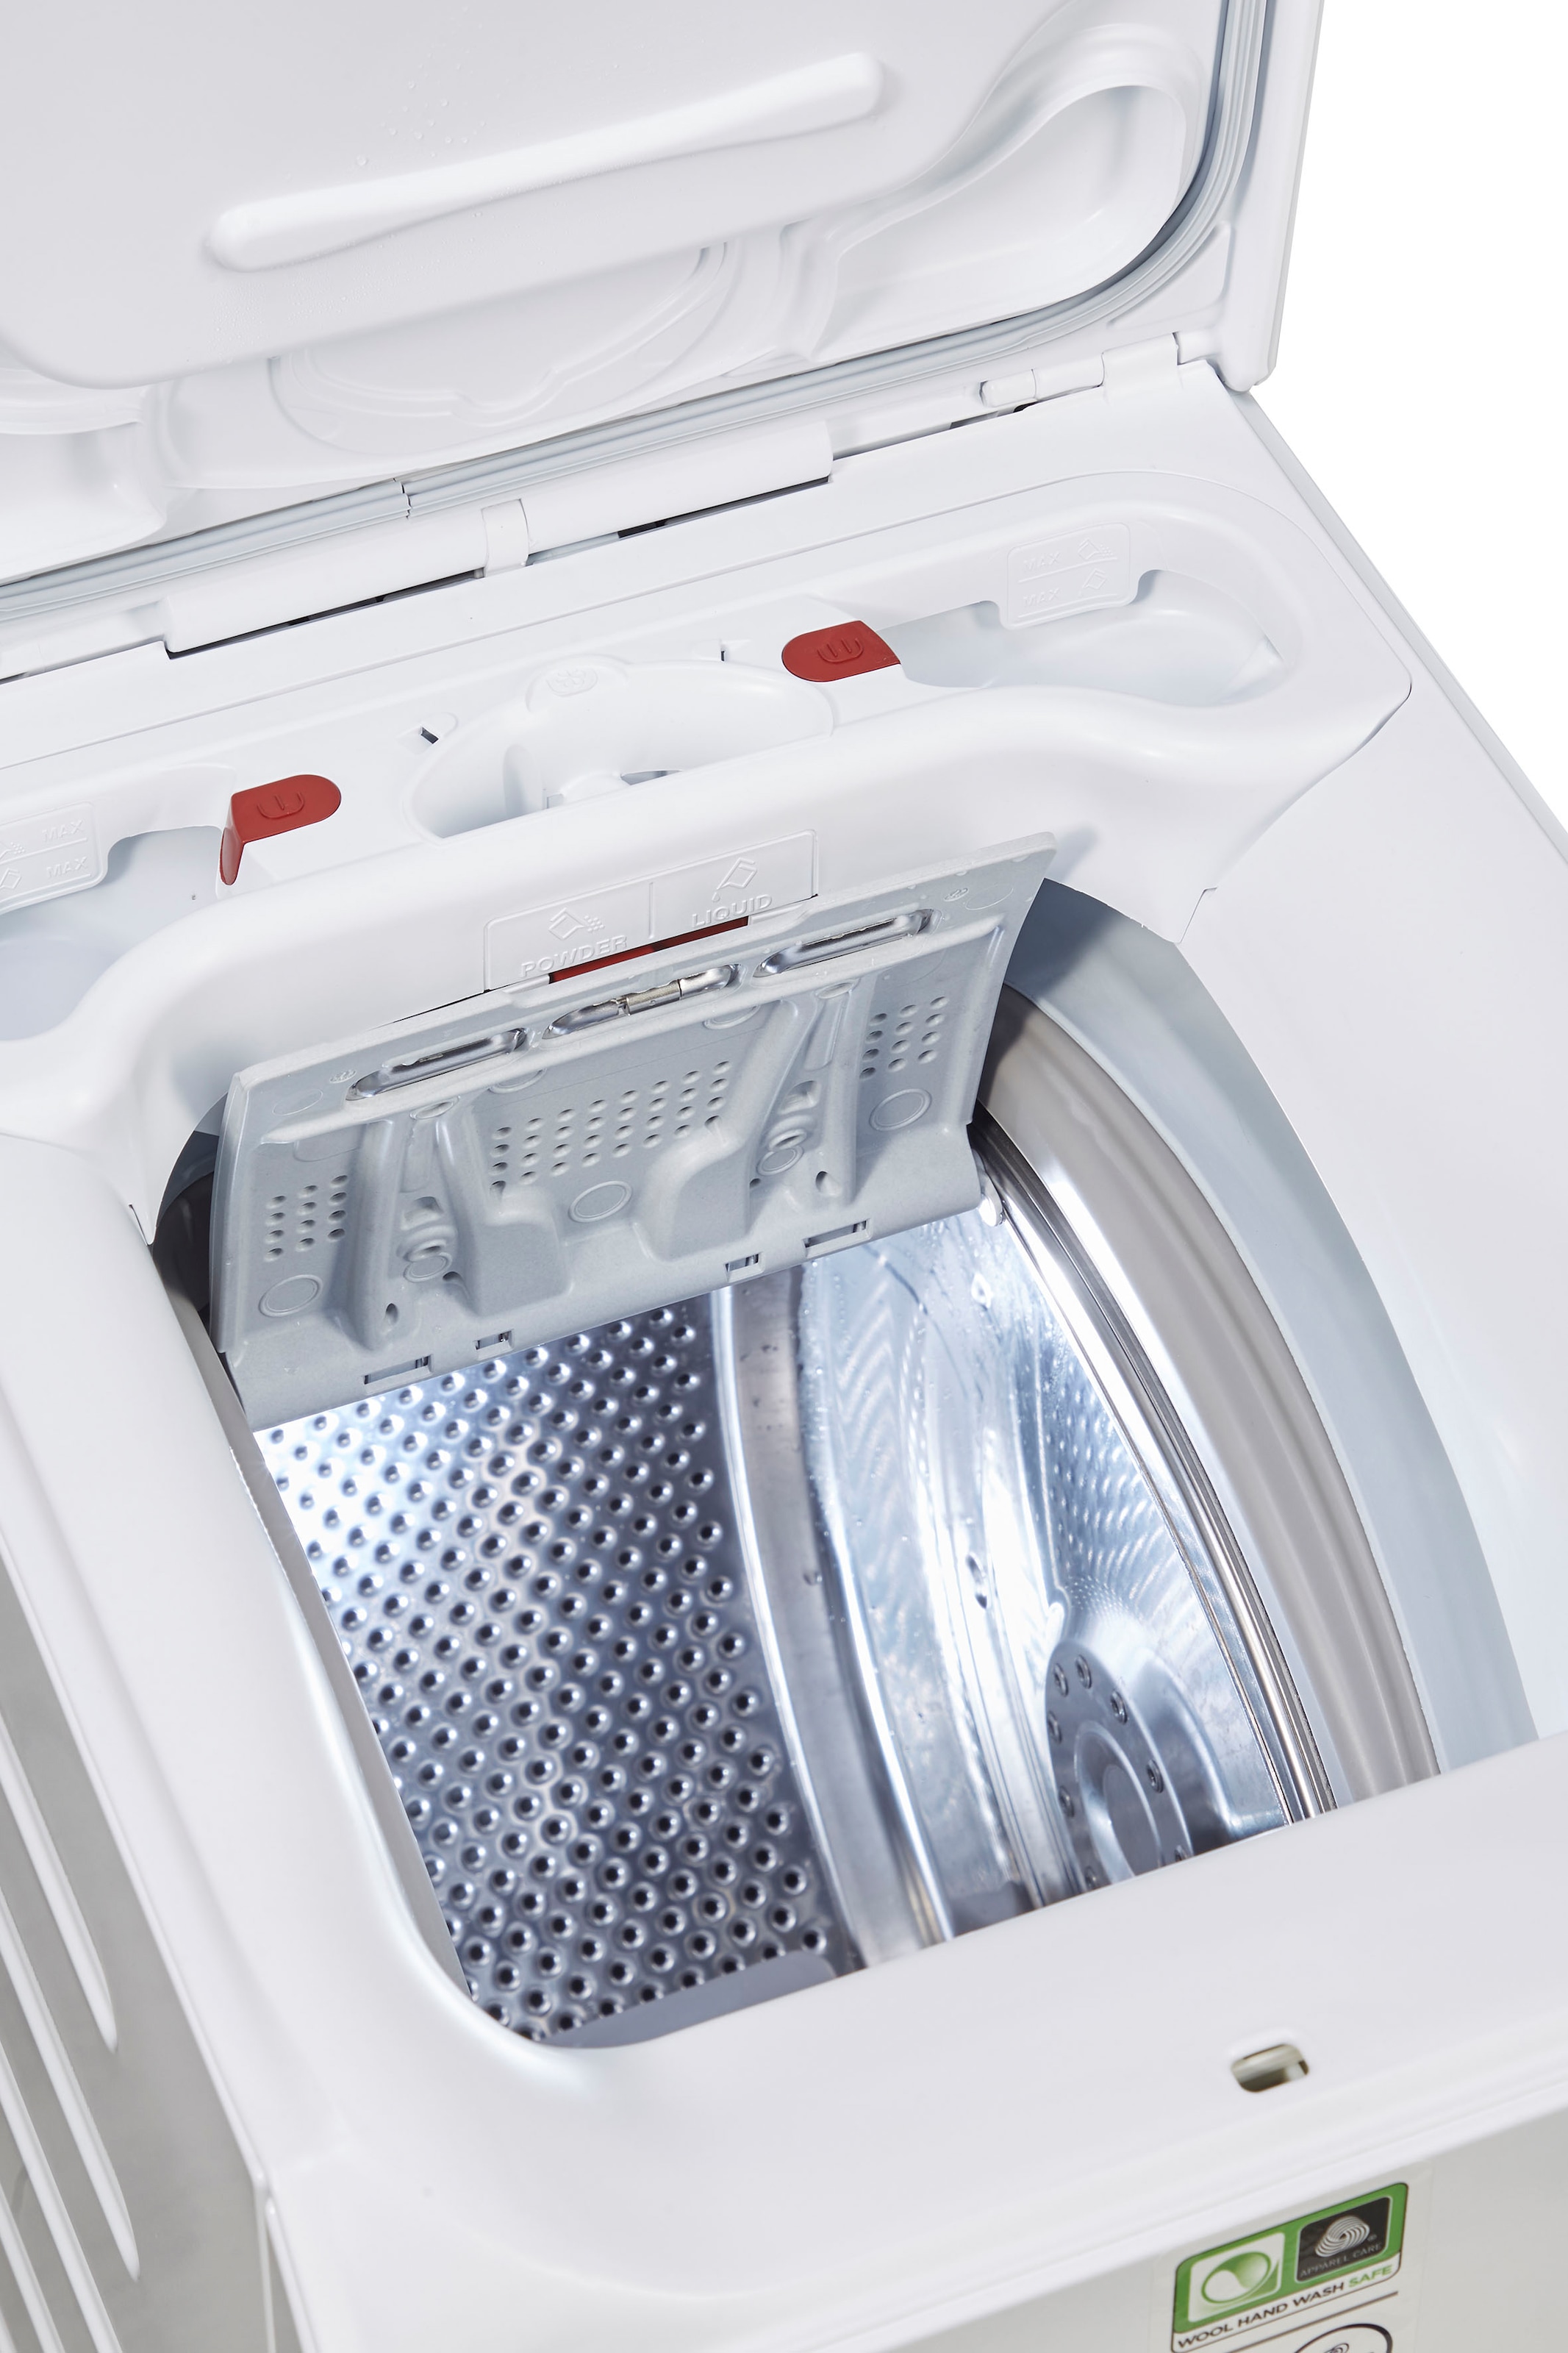 AEG Waschmaschine Toplader, Serie 7000, L7TE56STL, 6 kg, 1500 U/min  bestellen bei OTTO | Toplader